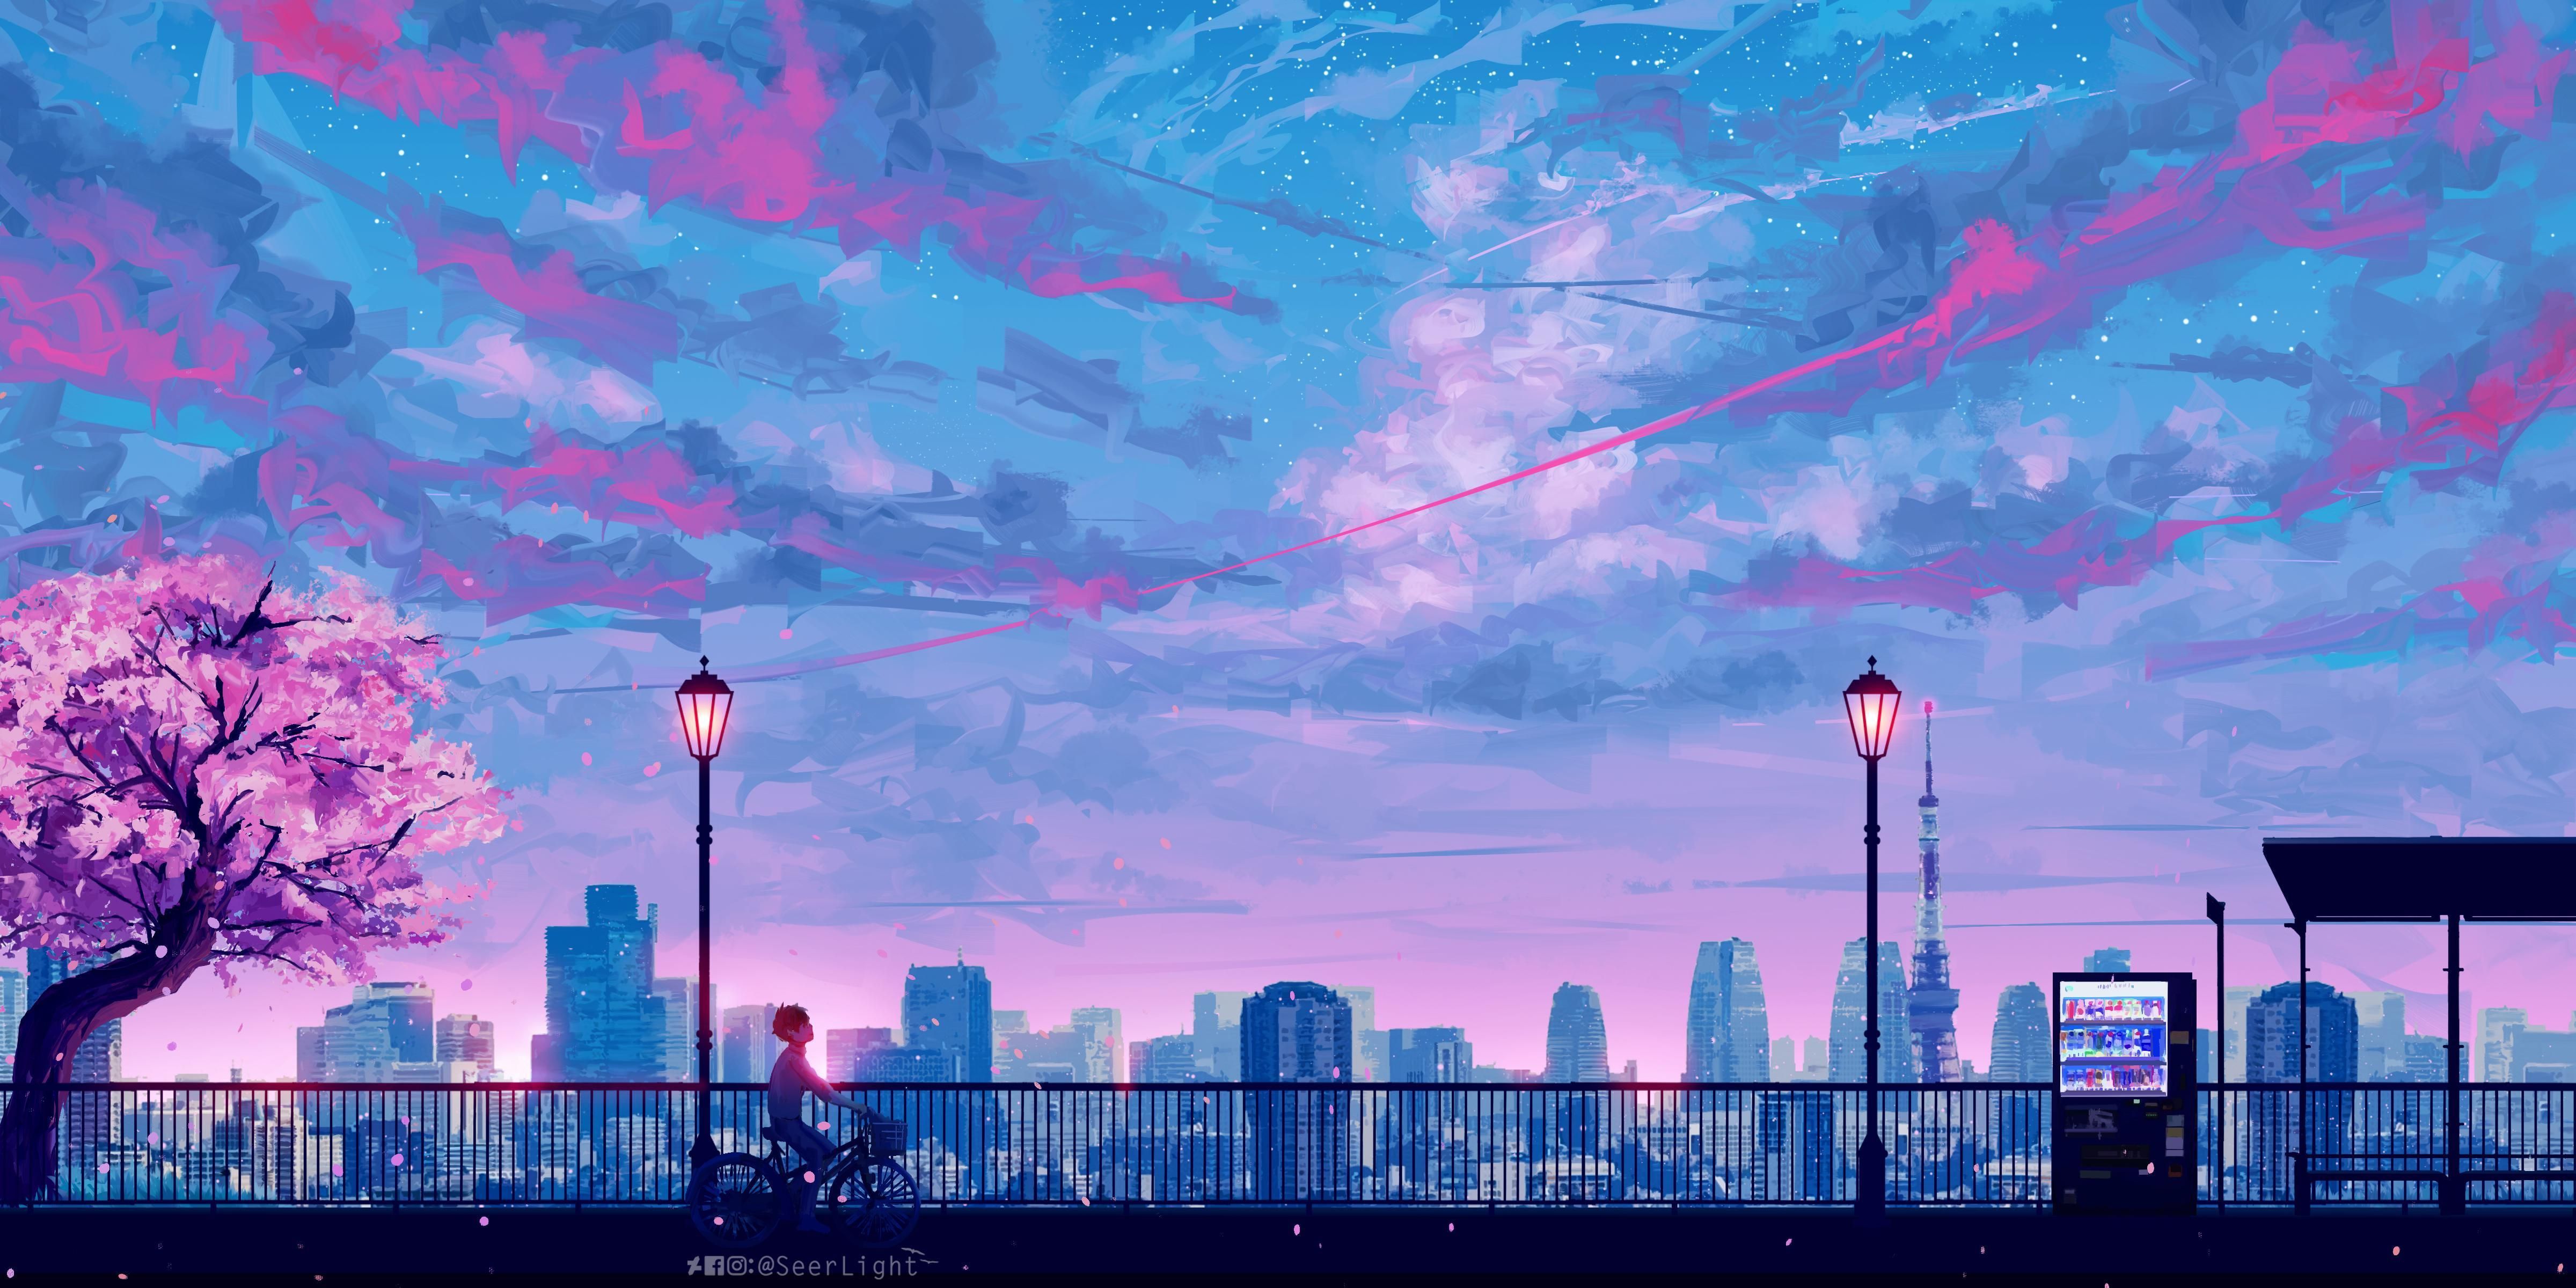  Anime Hintergrundbild 4800x2400. Aesthetic Anime Wallpaper. Aesthetic desktop wallpaper, Anime scenery wallpaper, Scenery wallpaper